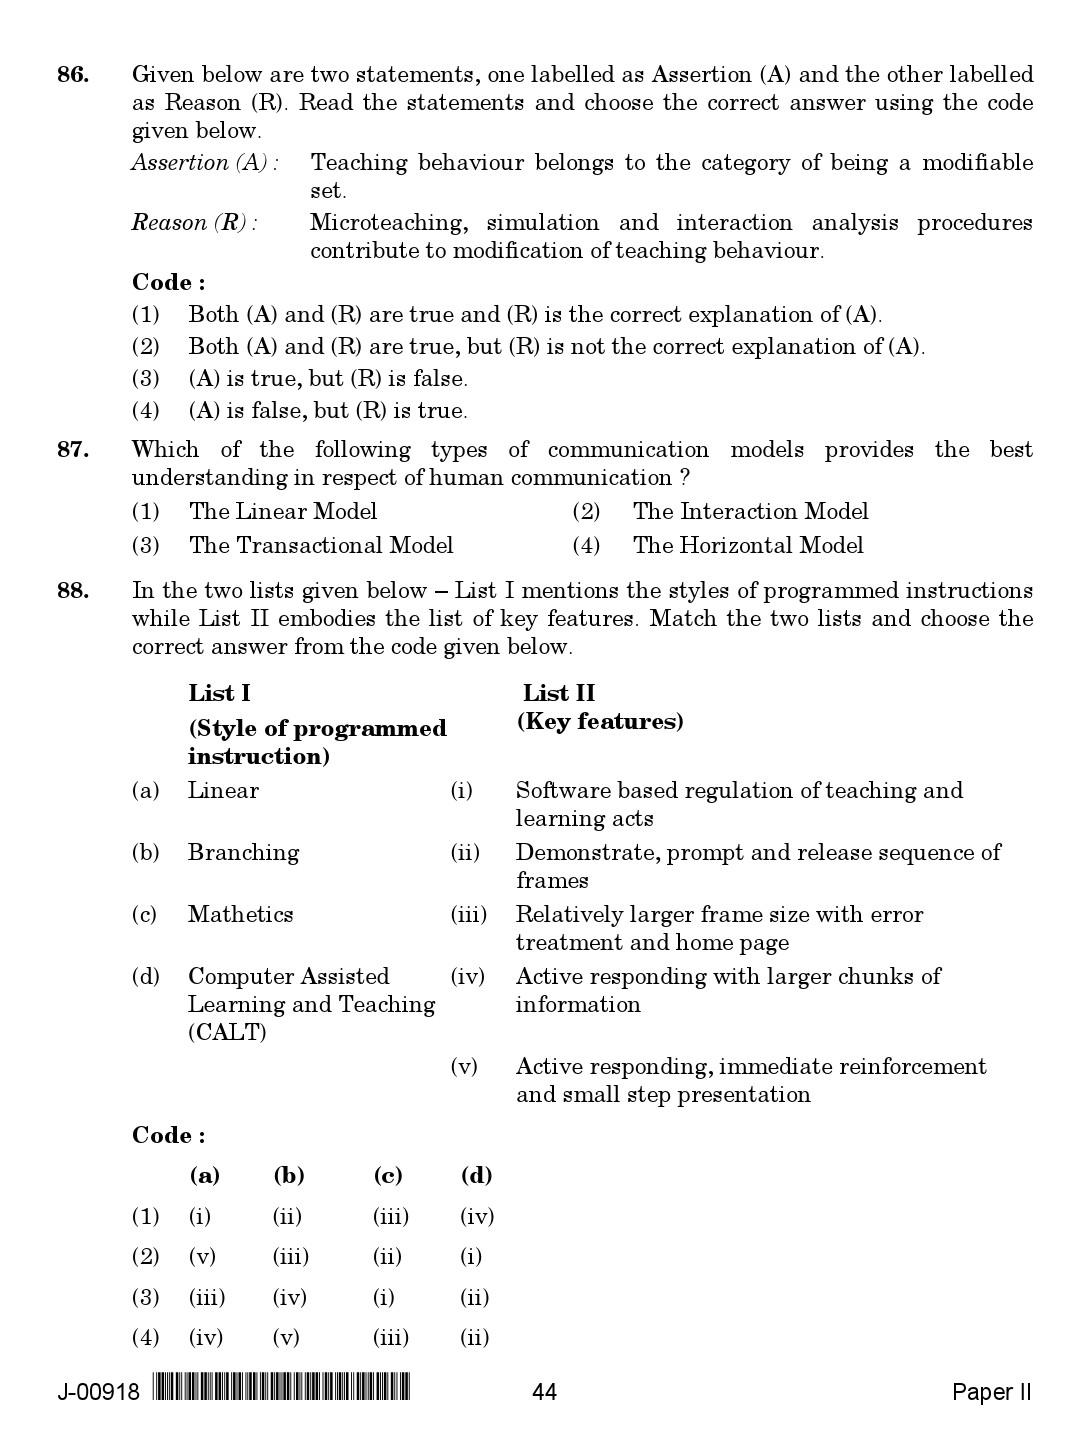 education net question paper pdf